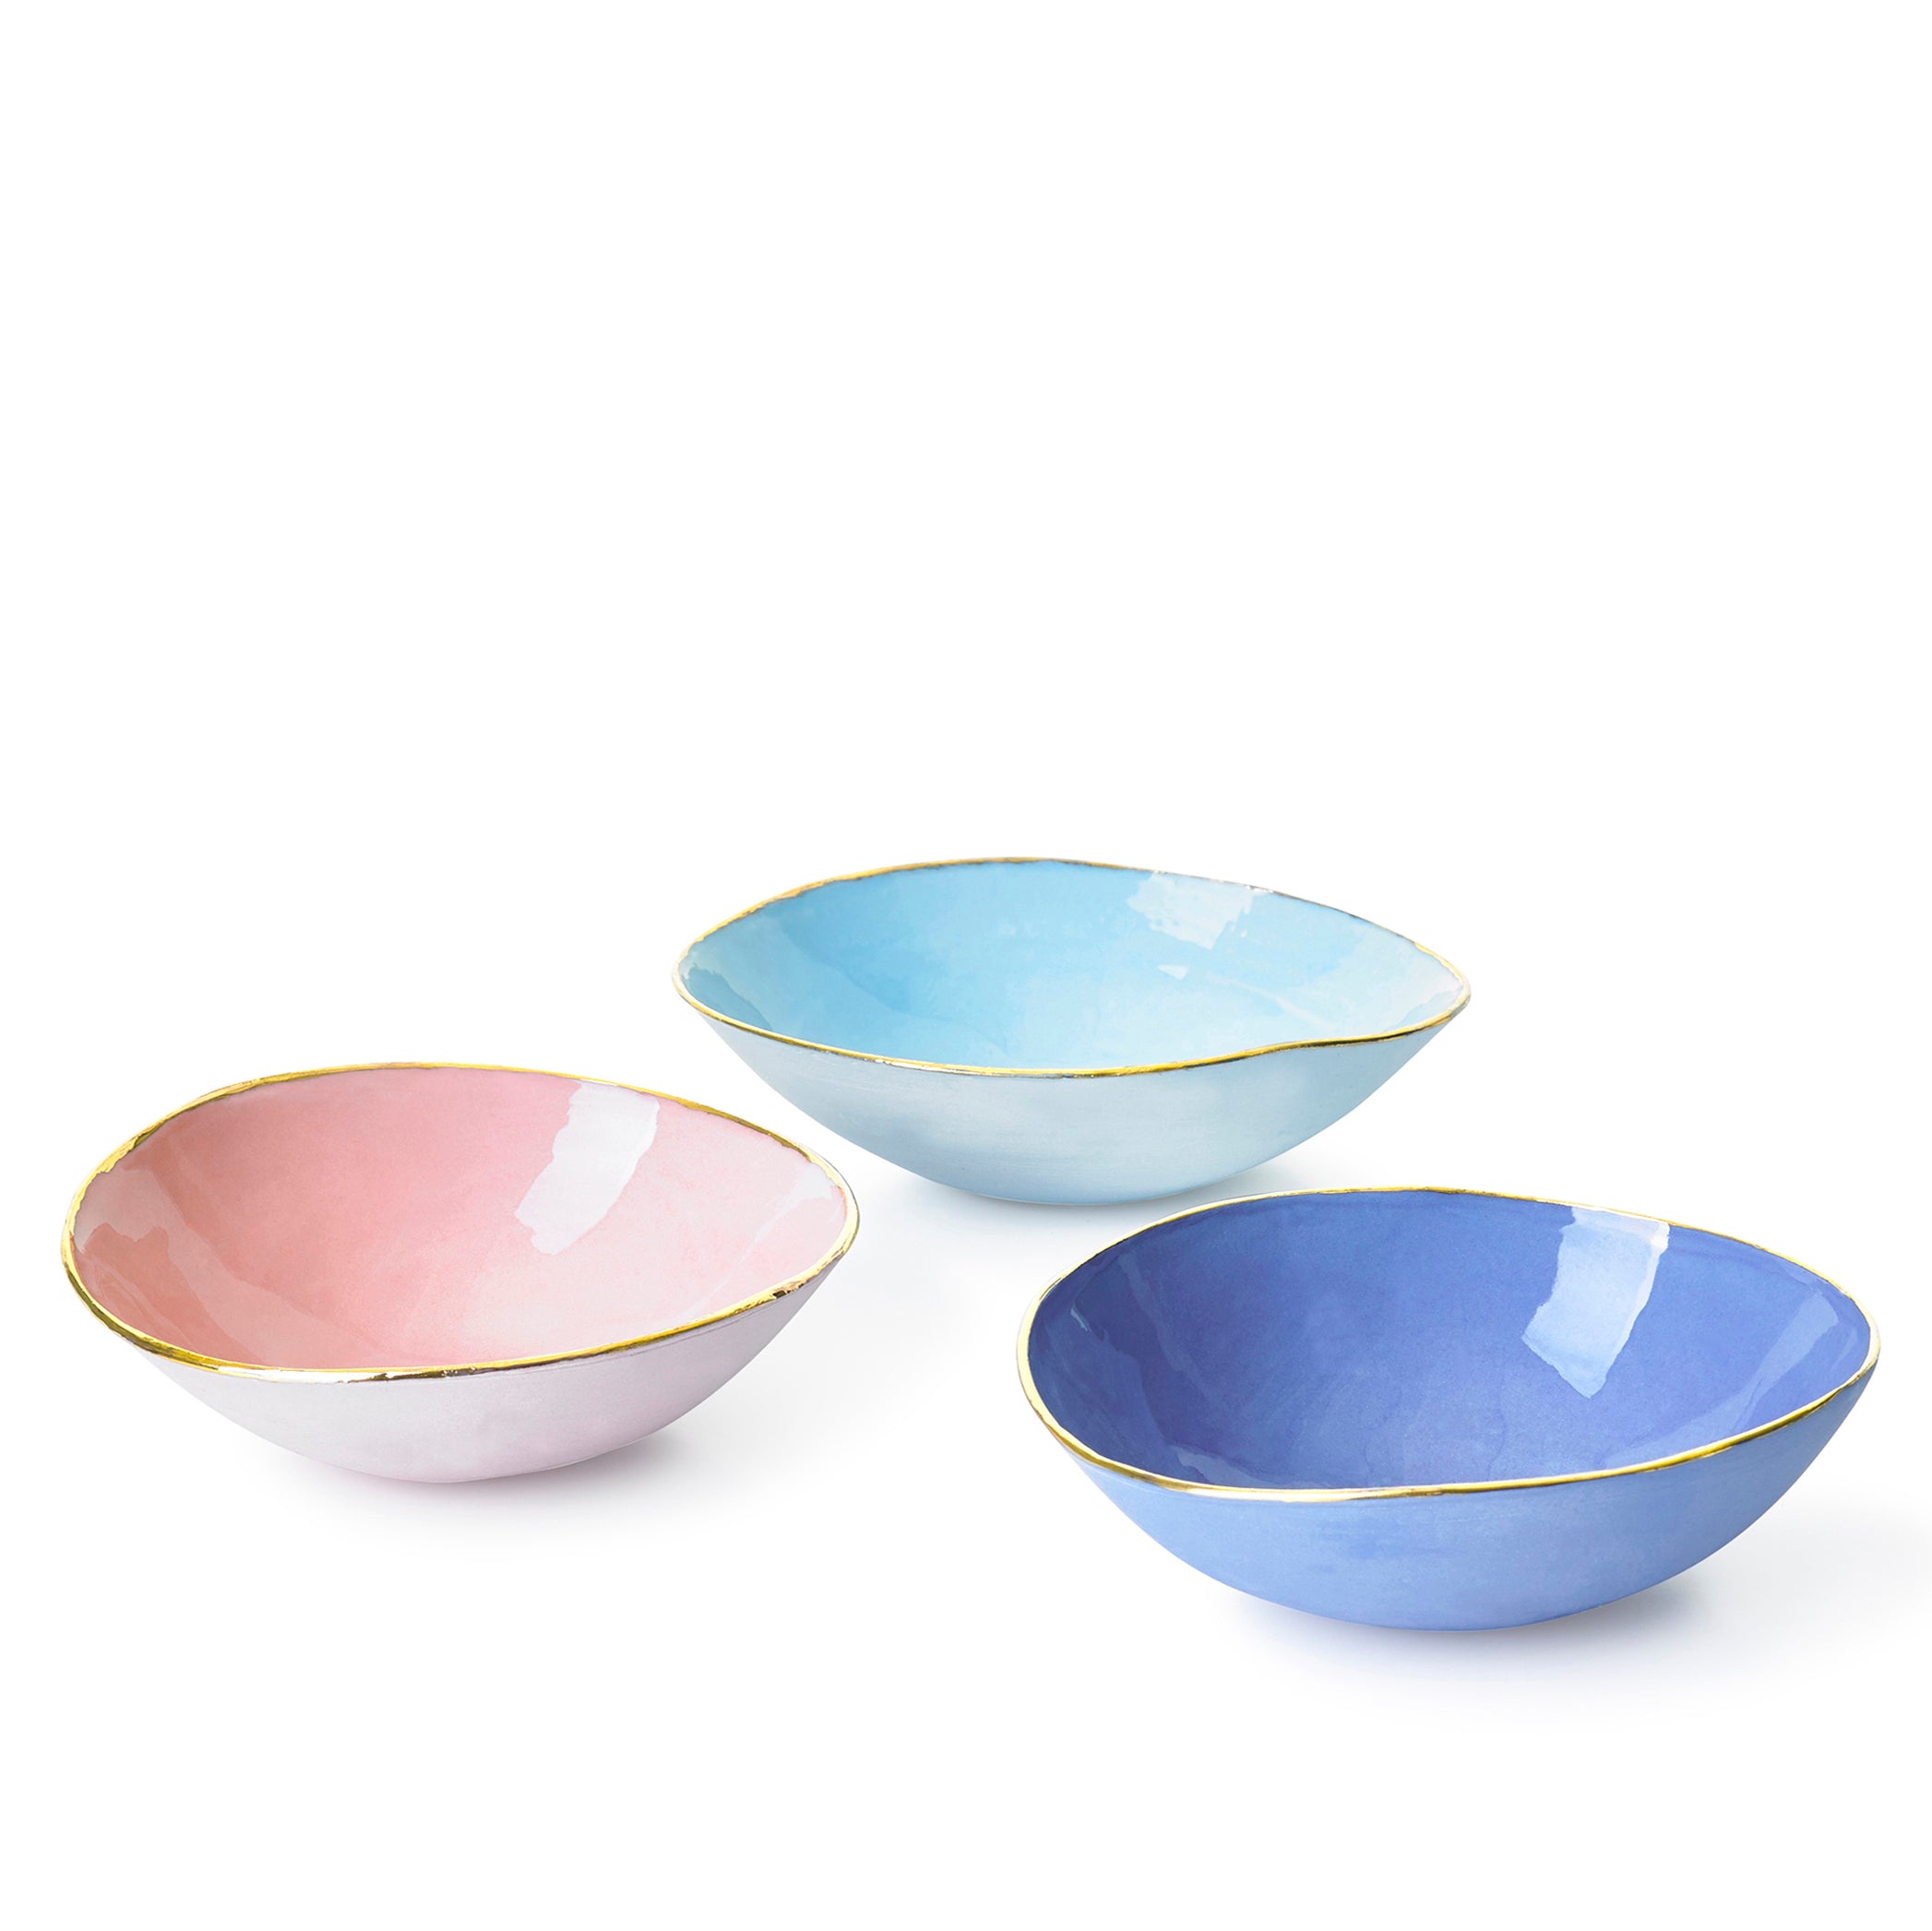 Light Blue Ceramic Bowl with Gold Rim, 16cm